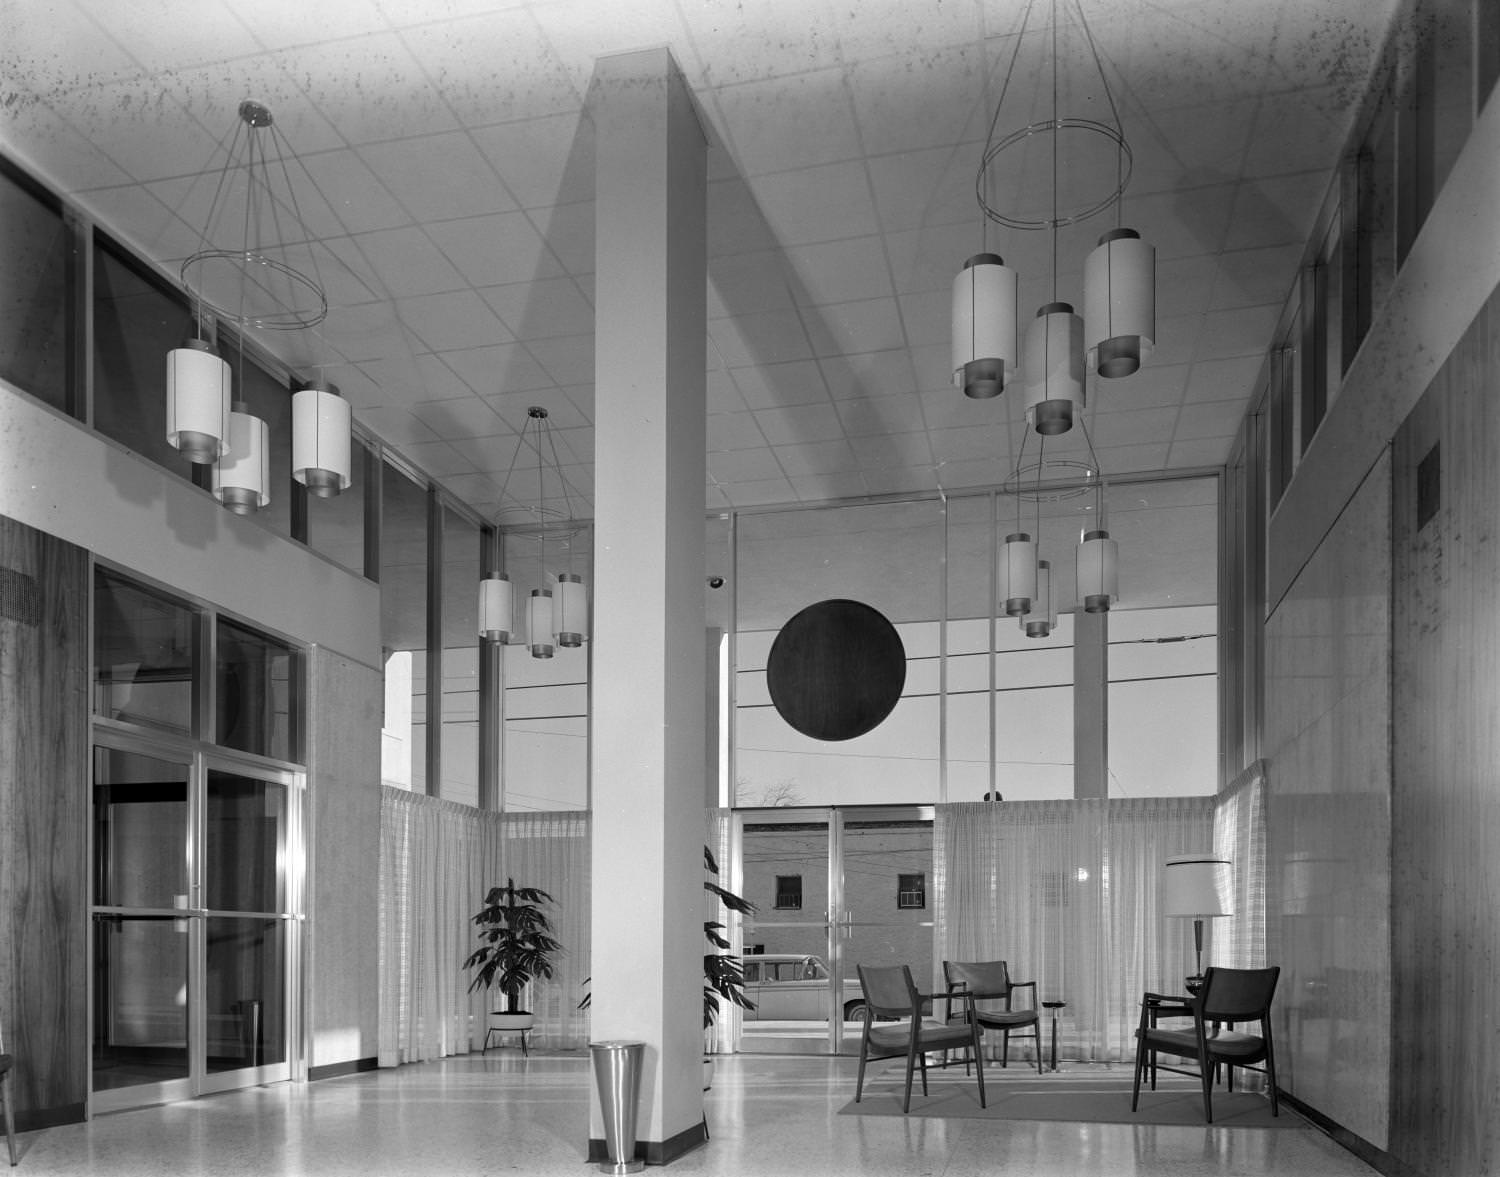 A foyer in a modern, postwar building, 1961